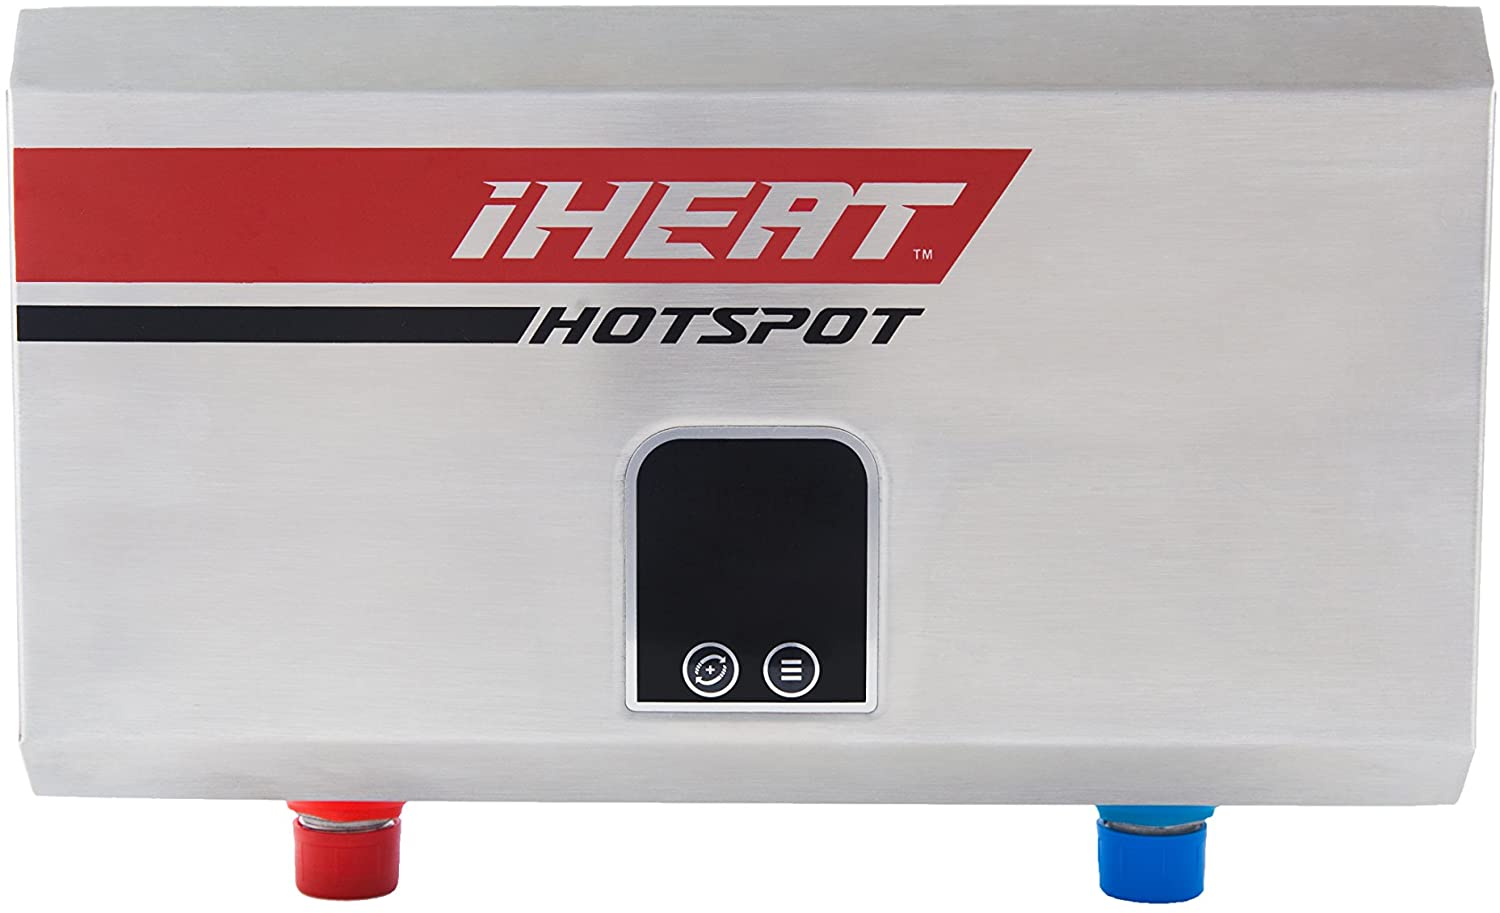 Best 110 Volt Tankless Water Heater